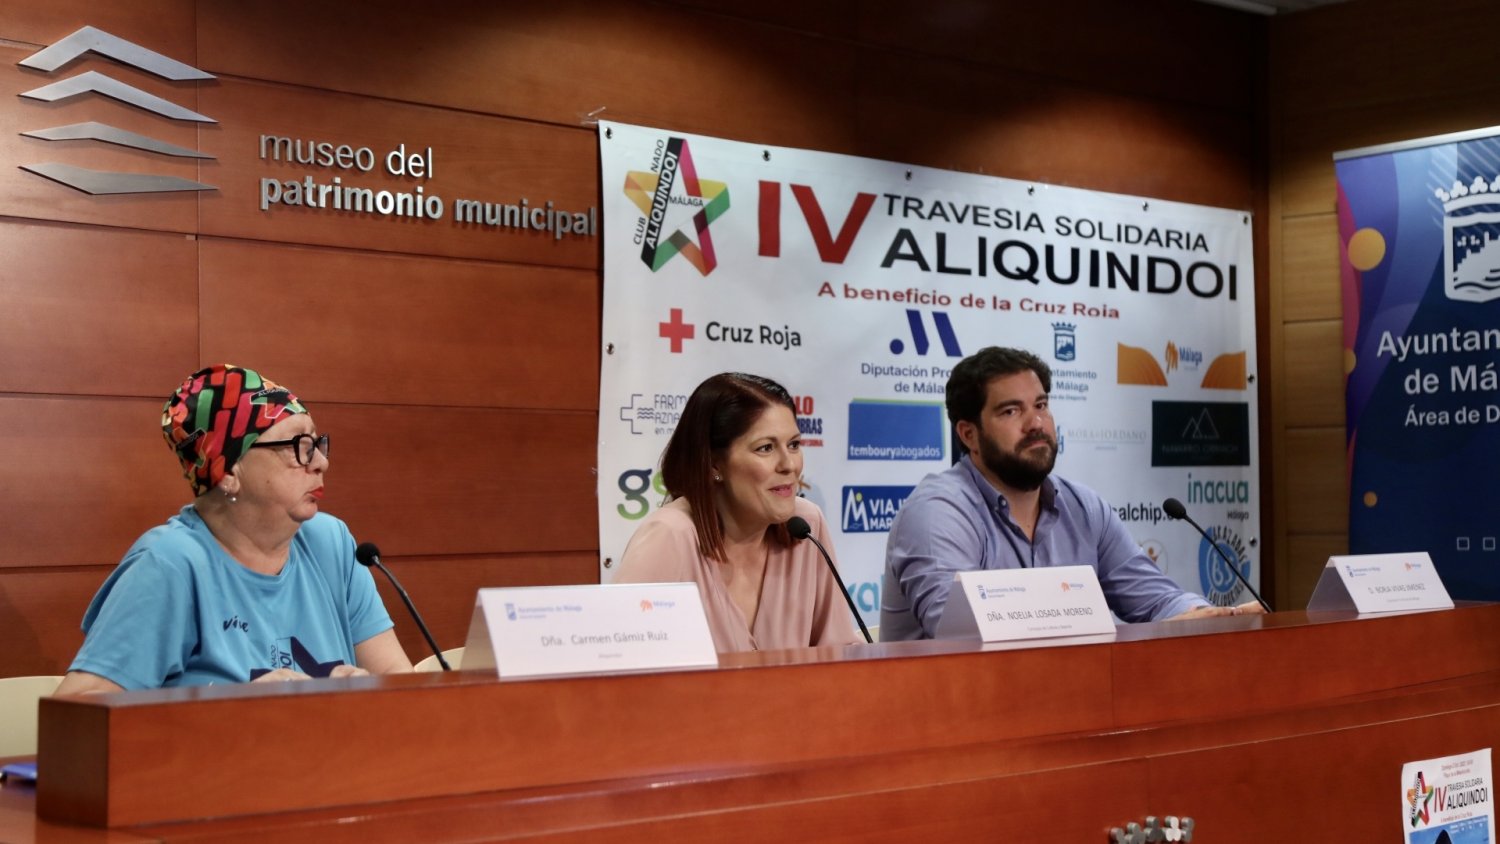 Málaga acoge este domingo la IV Travesía Solidaria Aliquindoi